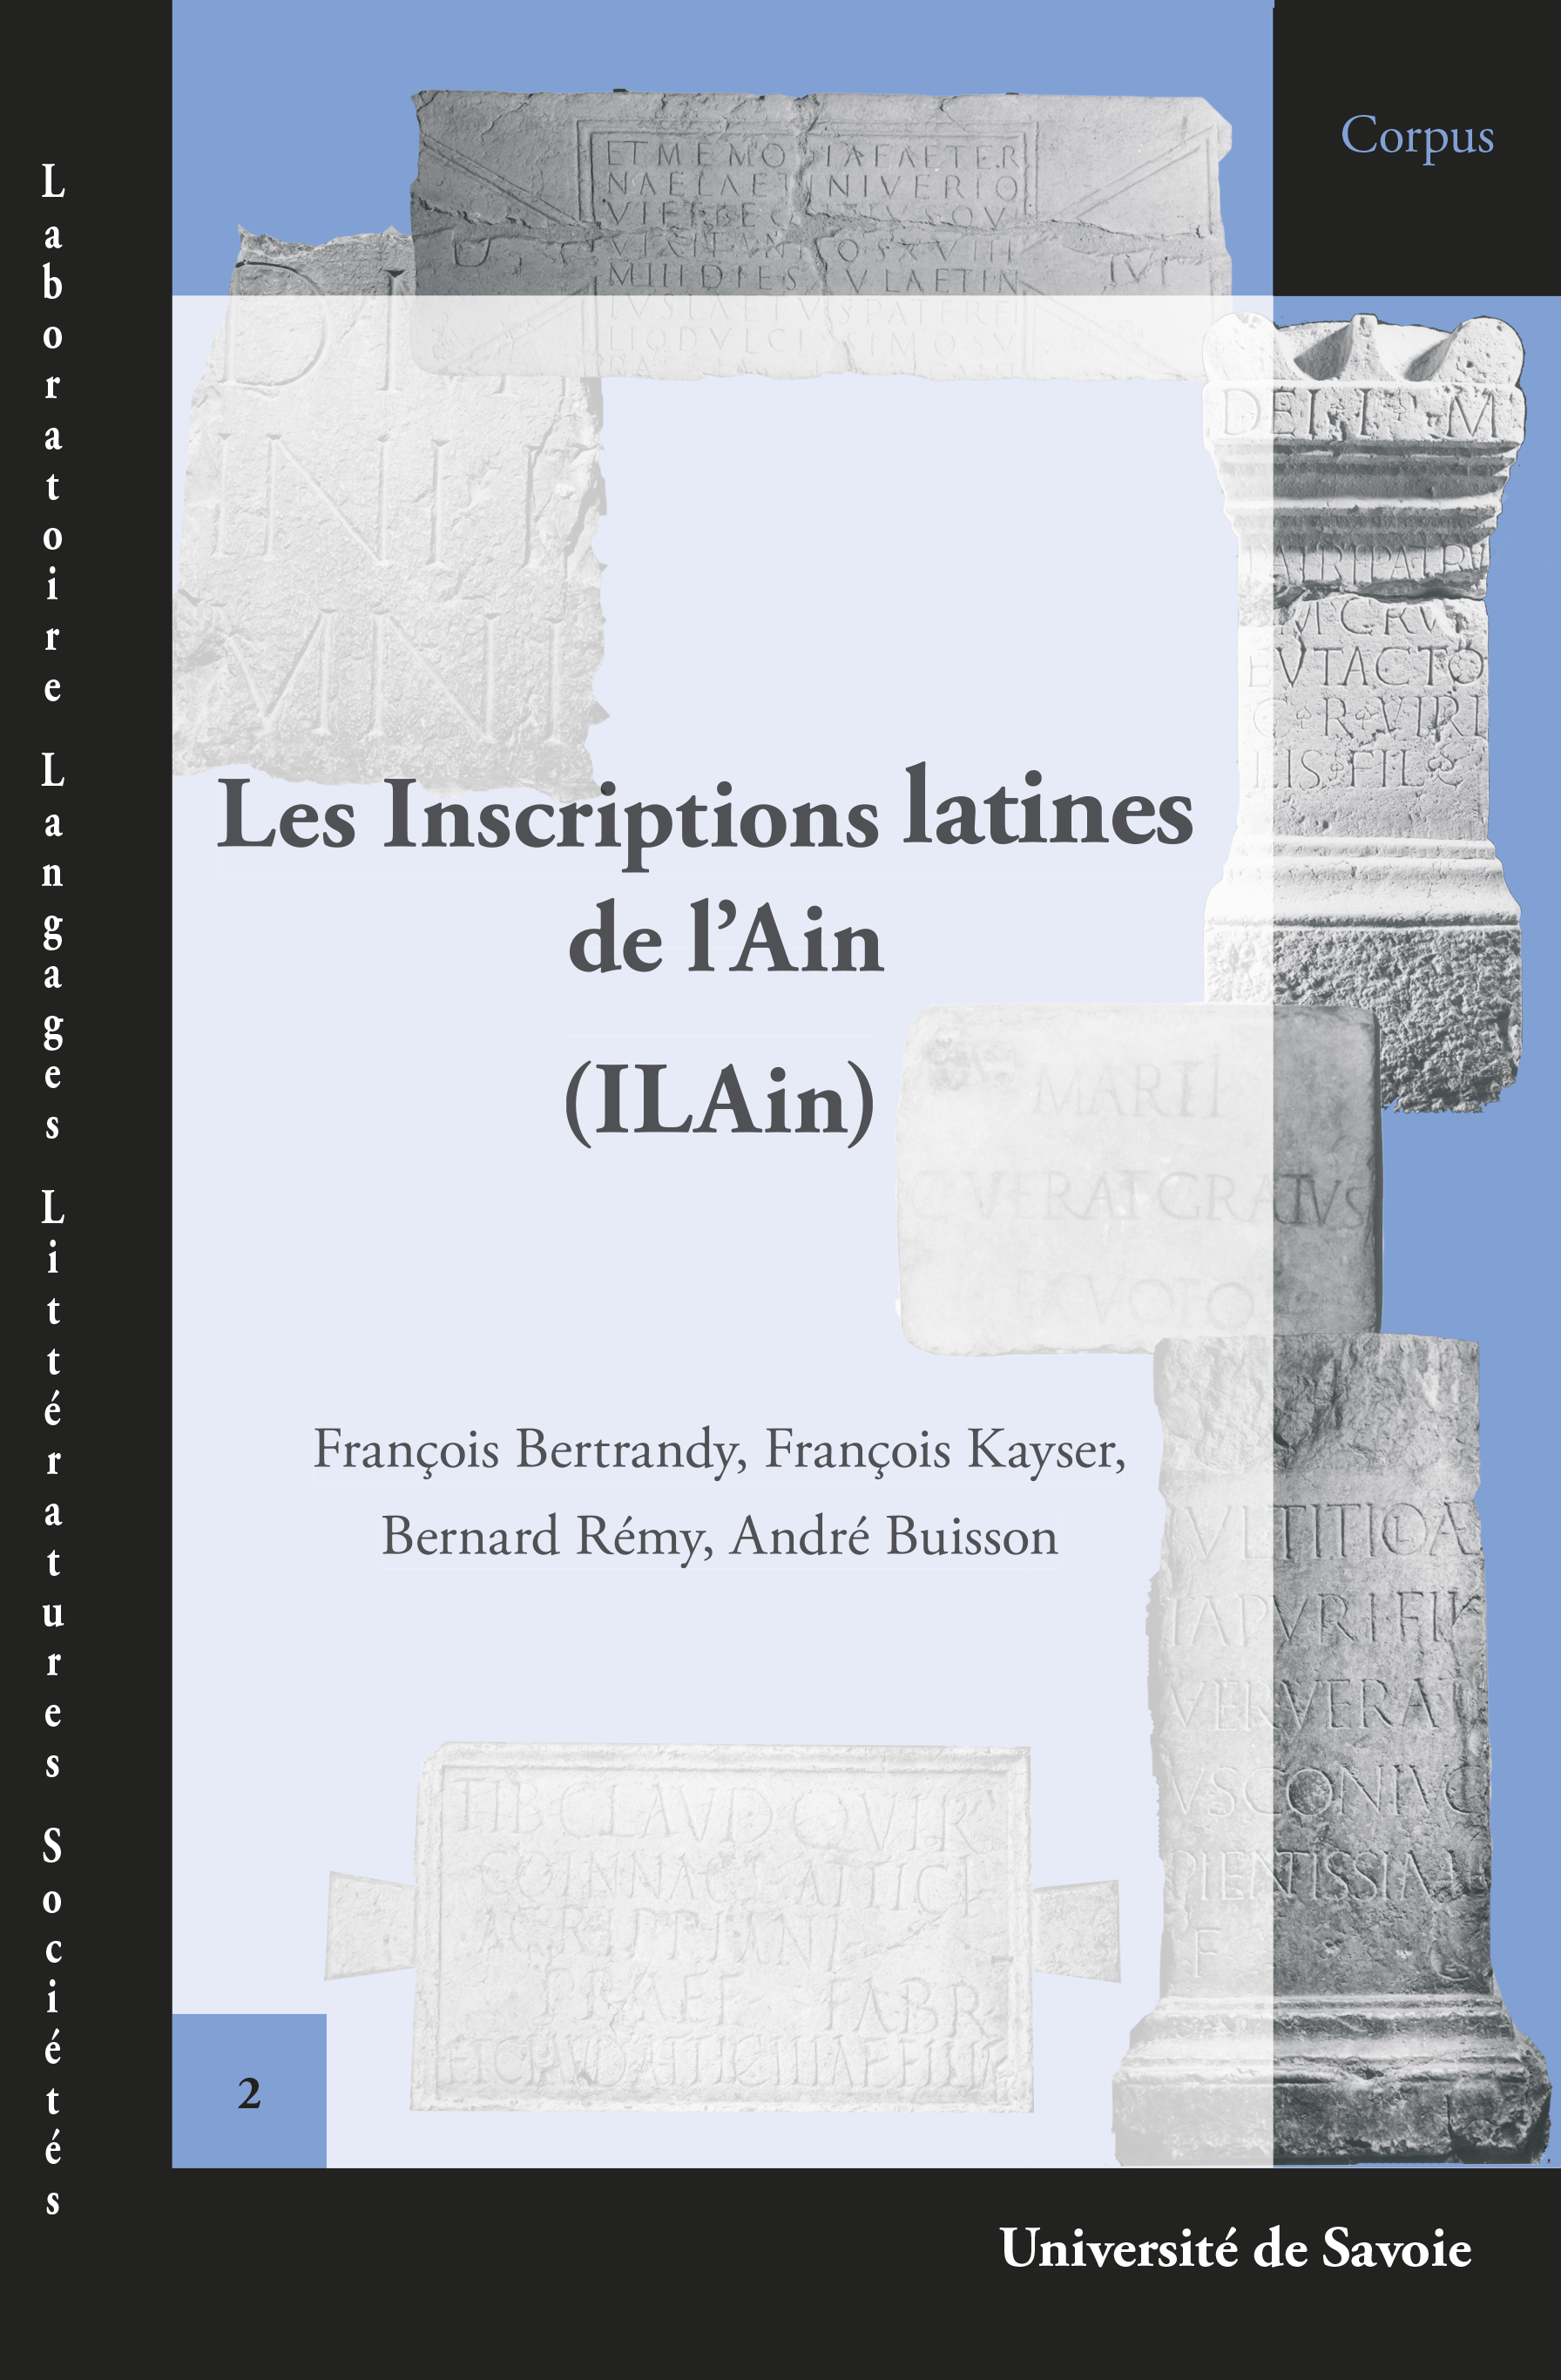 Les Inscriptions latines de l'Ain (ILAIN)